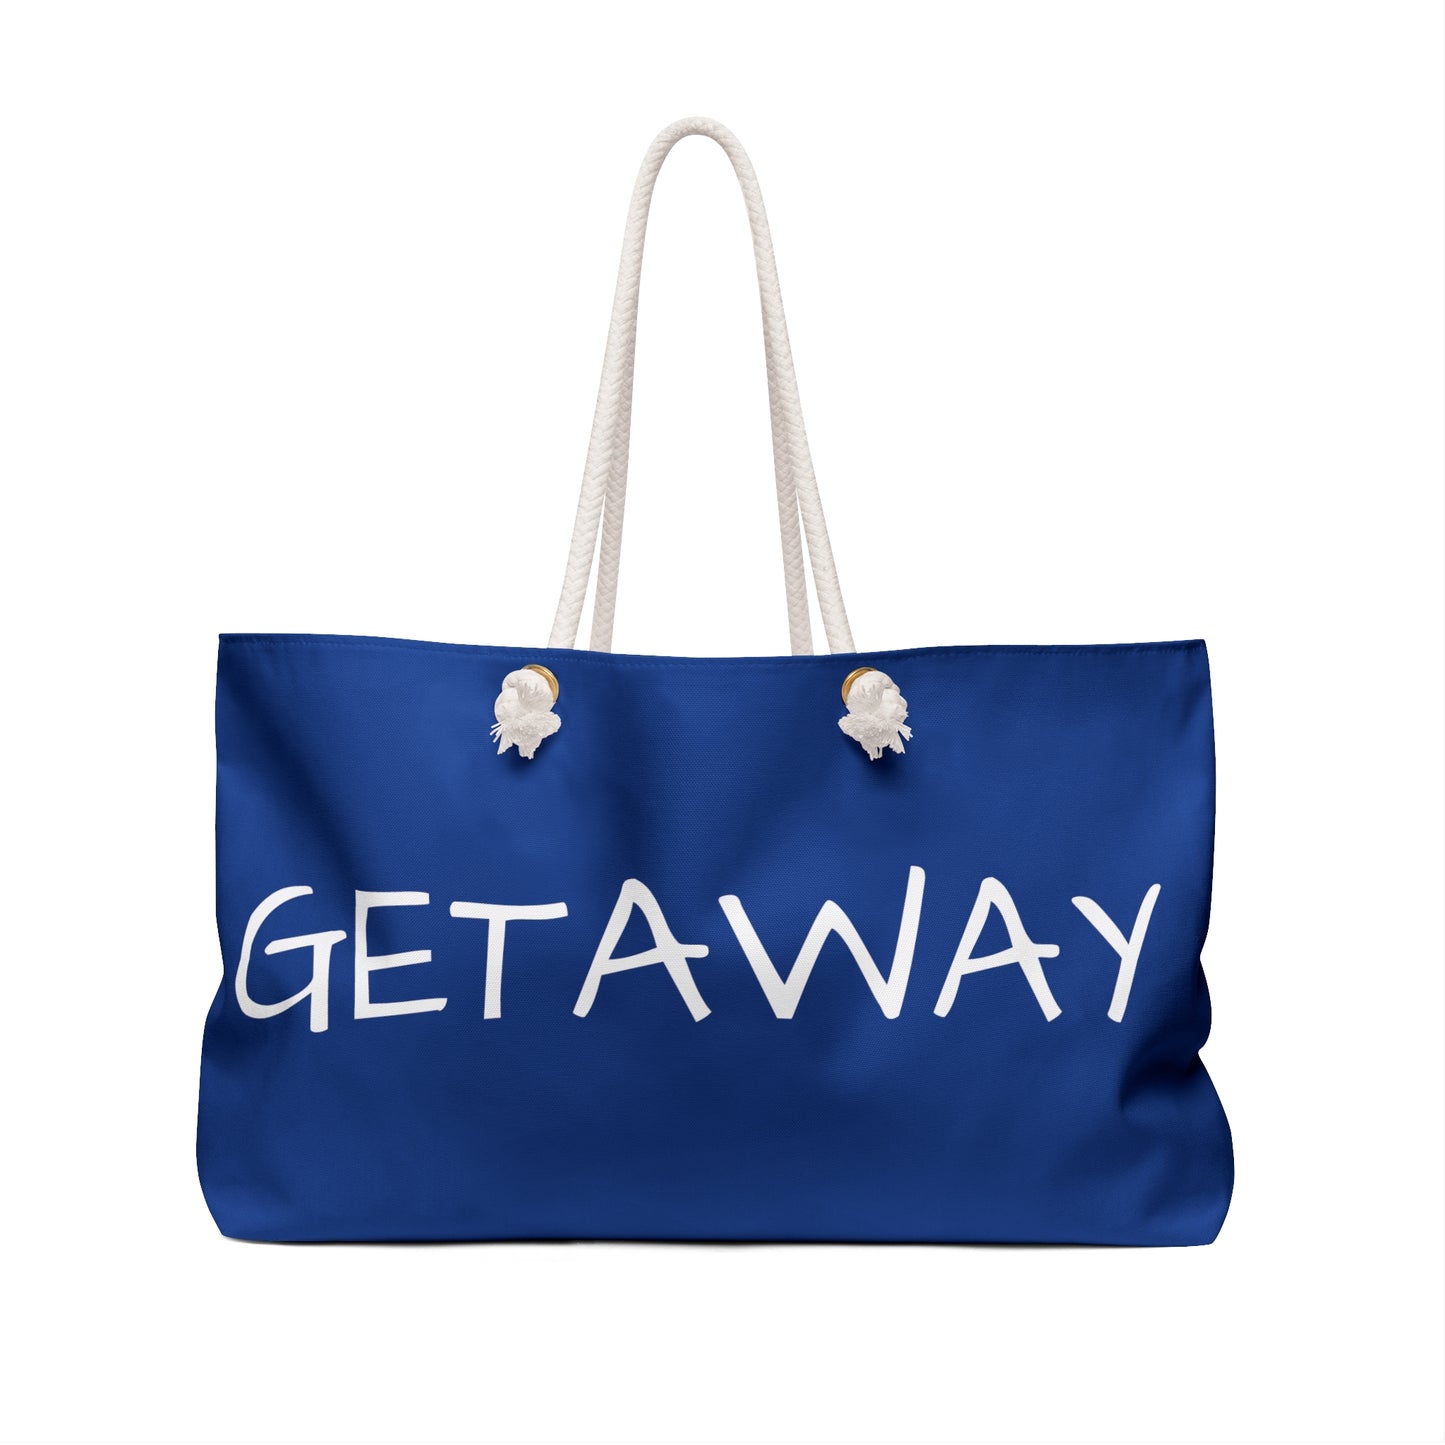 Weekender Tote Bag - Getaway back